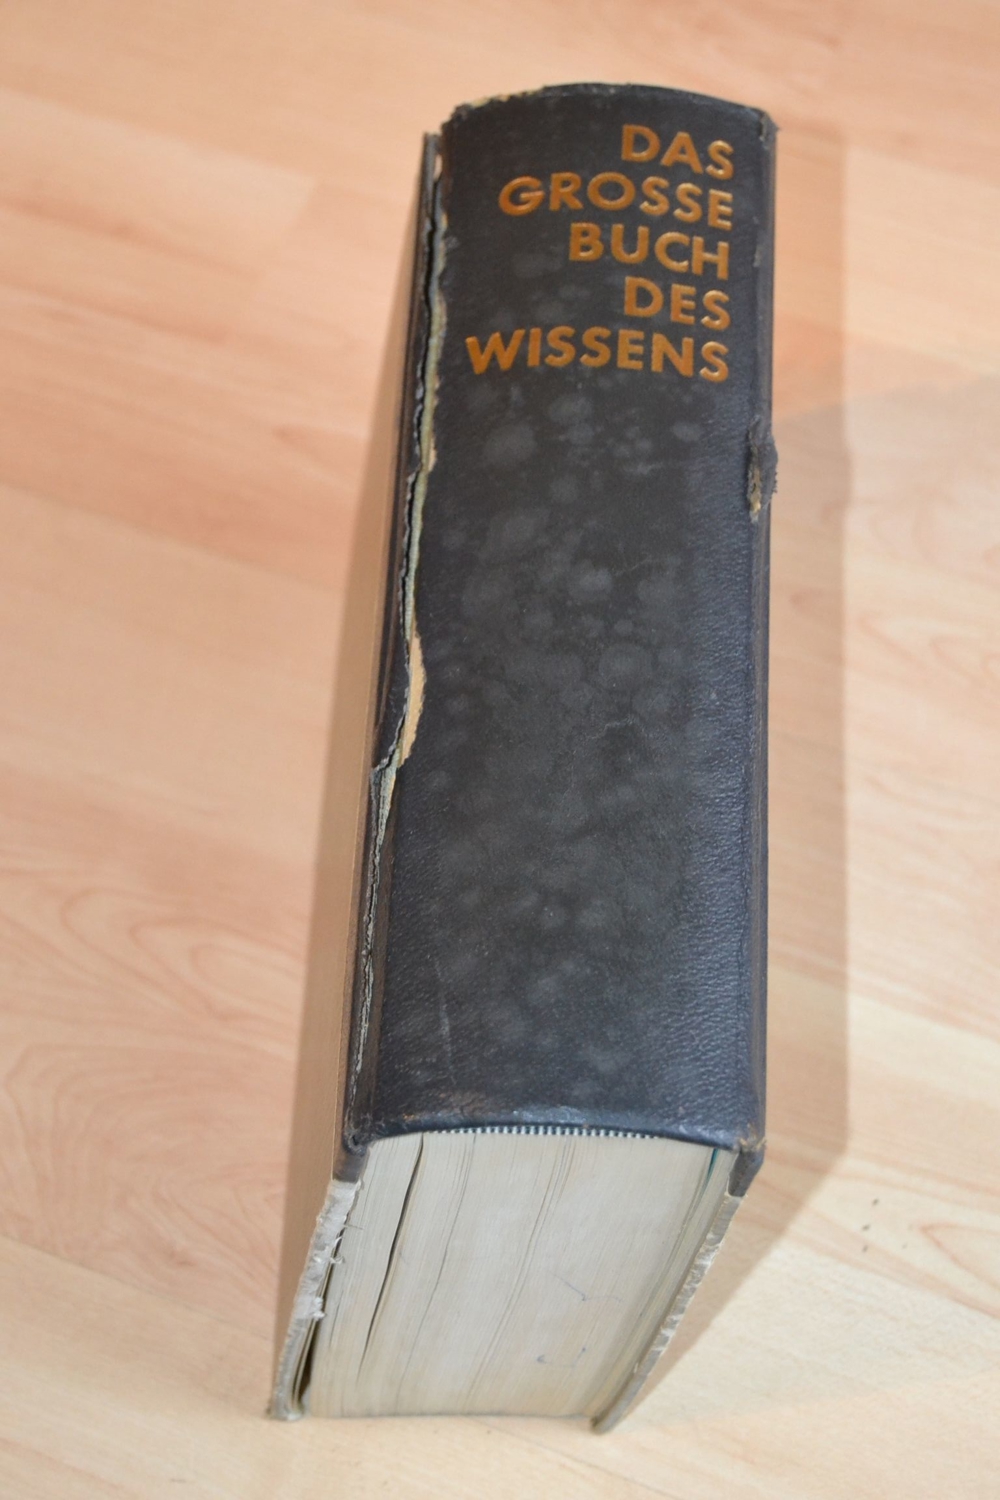 Verkaufe Buch "Das grosse Buch des Wissens" von Dr. E. Wiegand, Fackelverlag, aus dem Jahr 1956